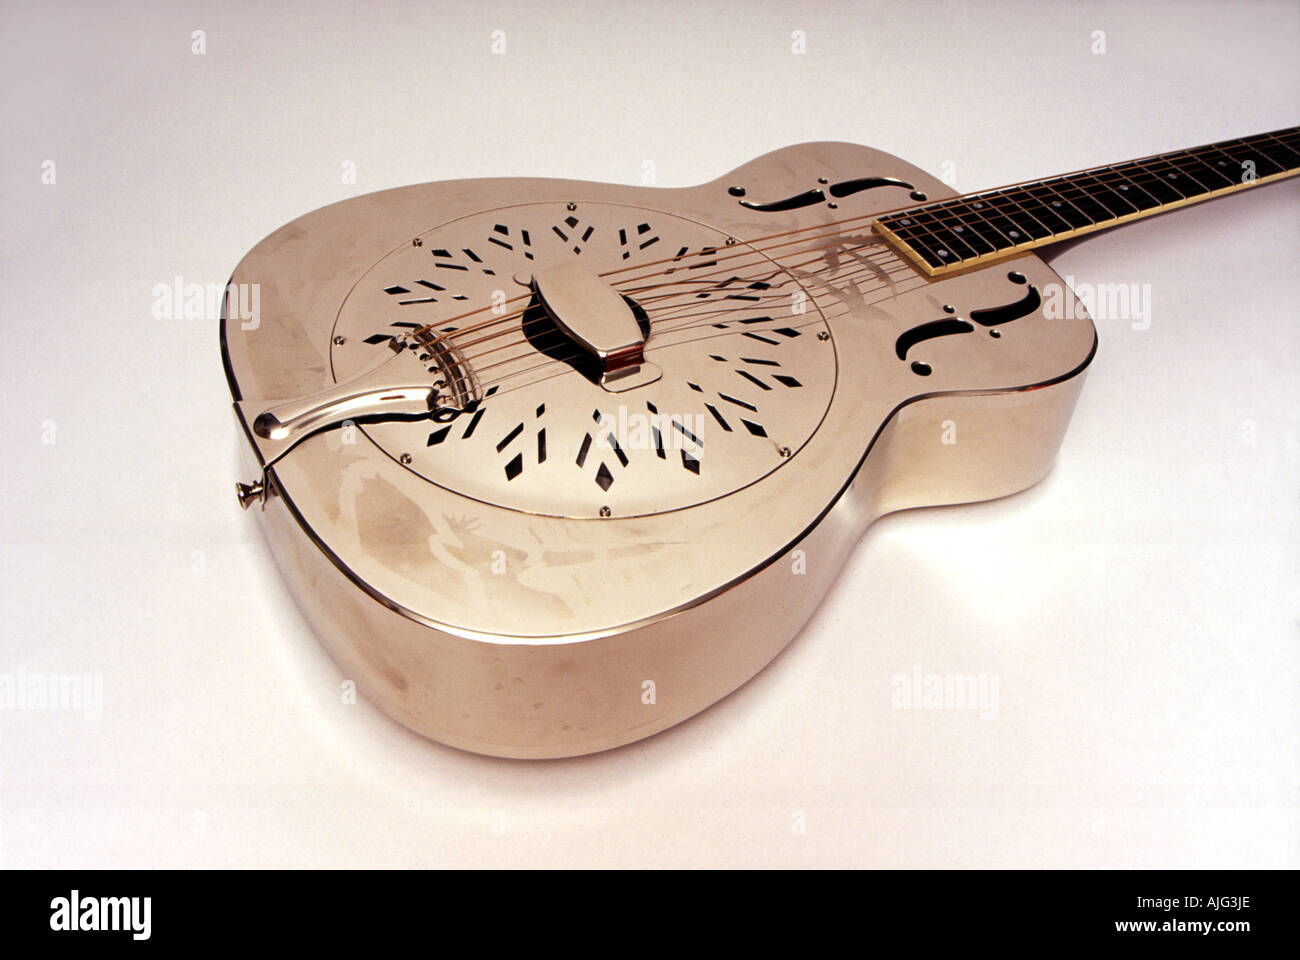 Mitte der 1930er Jahre Stil O Resonator Modell ähnlich dem von Mark Knopfler  spielte Gitarre Stockfotografie - Alamy